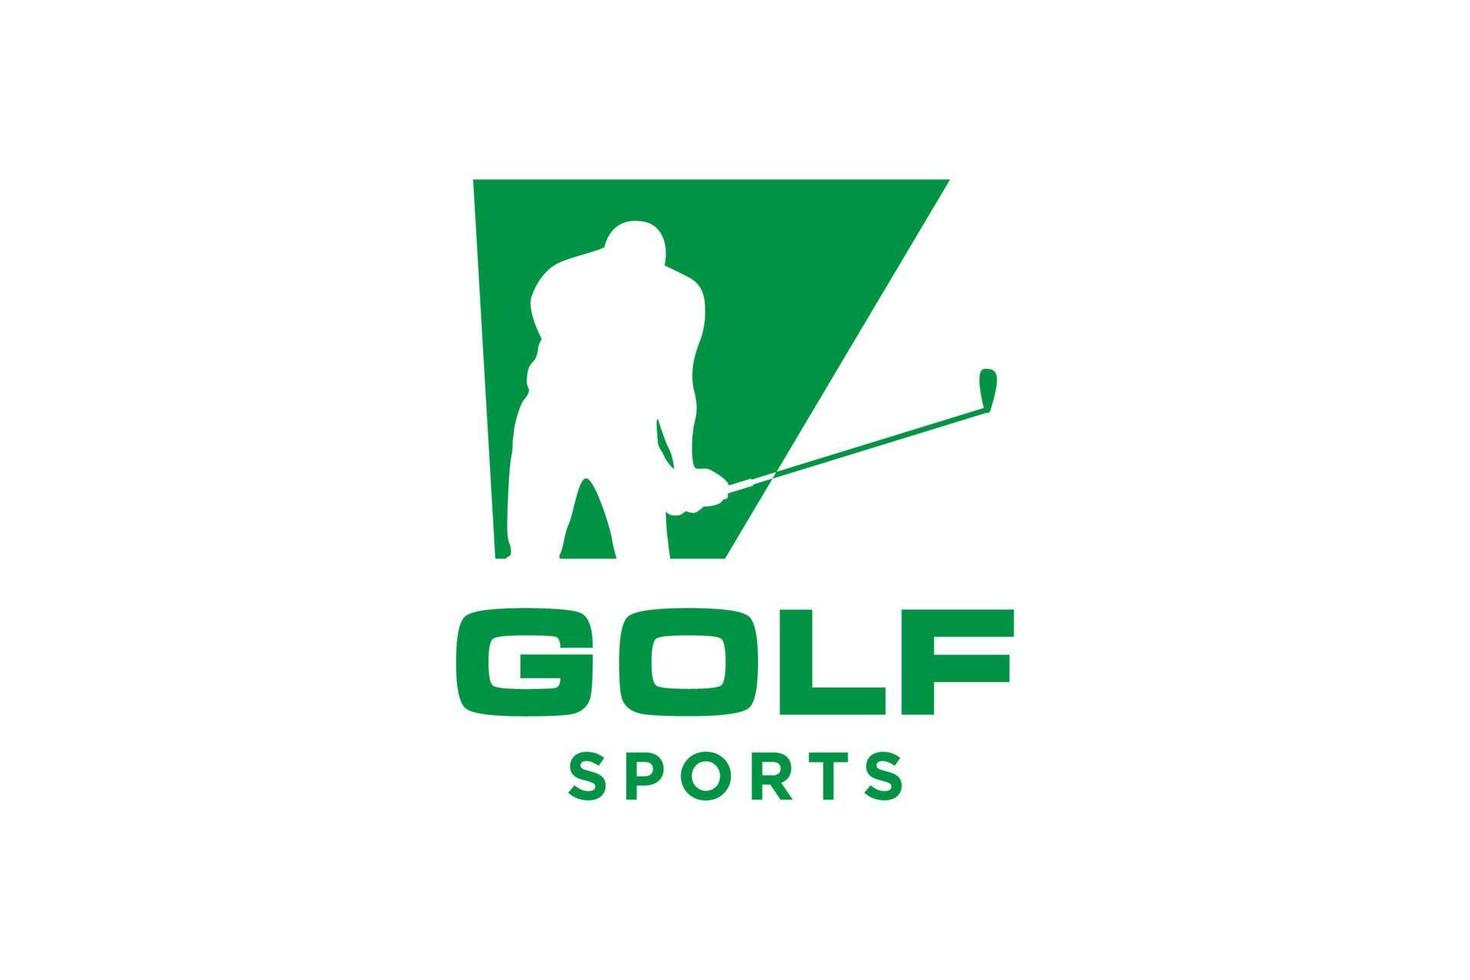 logotipo de ícone de letra do alfabeto v para modelo de vetor de design de logotipo de golfe, rótulo vetorial de golfe, logotipo do campeonato de golfe, ilustração, ícone criativo, conceito de design